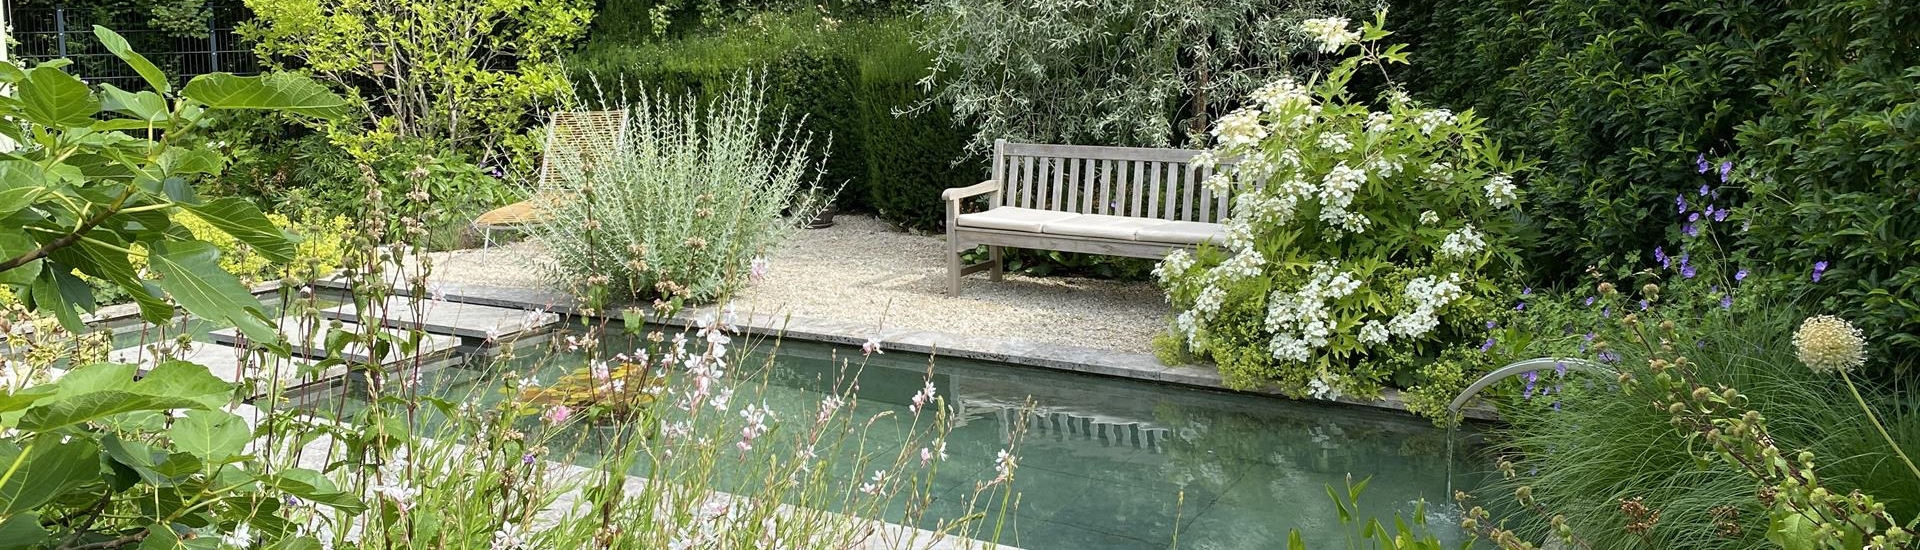 Garten mit Teich und Sitzplatz